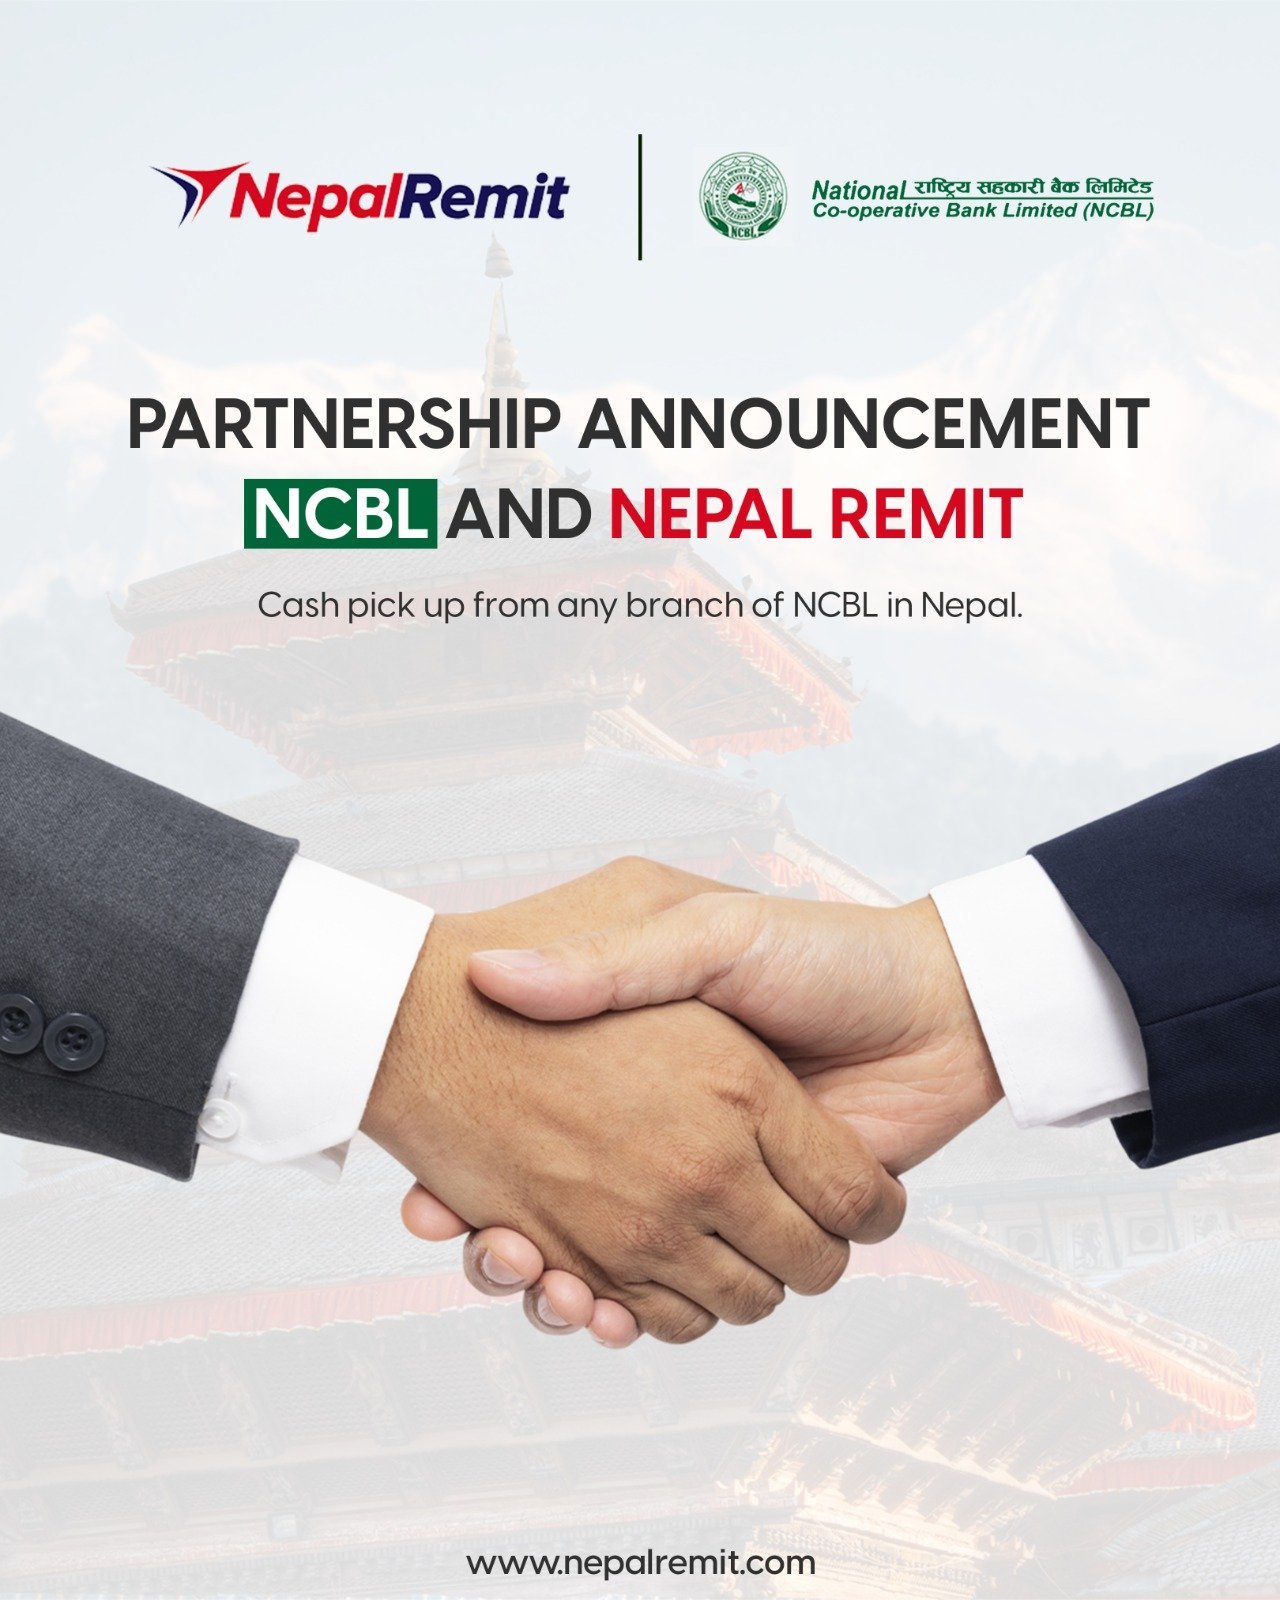 नेपाल रेमिट र राष्ट्रिय सहकारी बैंकबीच रेमिट्यान्स् भुक्तानी सम्झौता